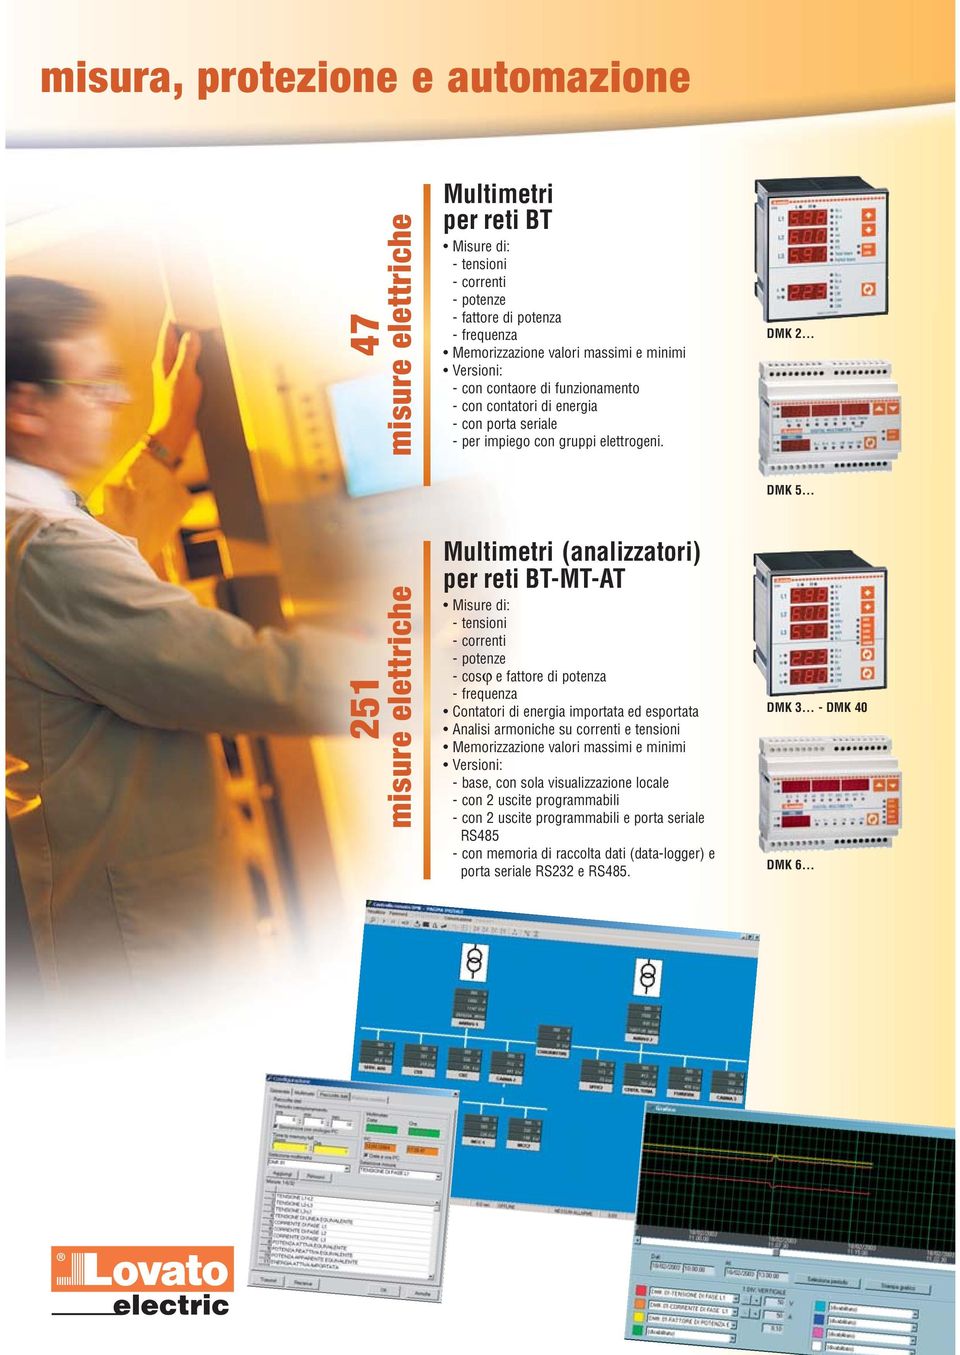 DMK 2 DMK 5 251 misure elettriche Multimetri (analizzatori) per reti BT-MT-T Misure di: - tensioni - correnti - potenze - cosϕ e fattore di potenza - frequenza Contatori di energia importata ed